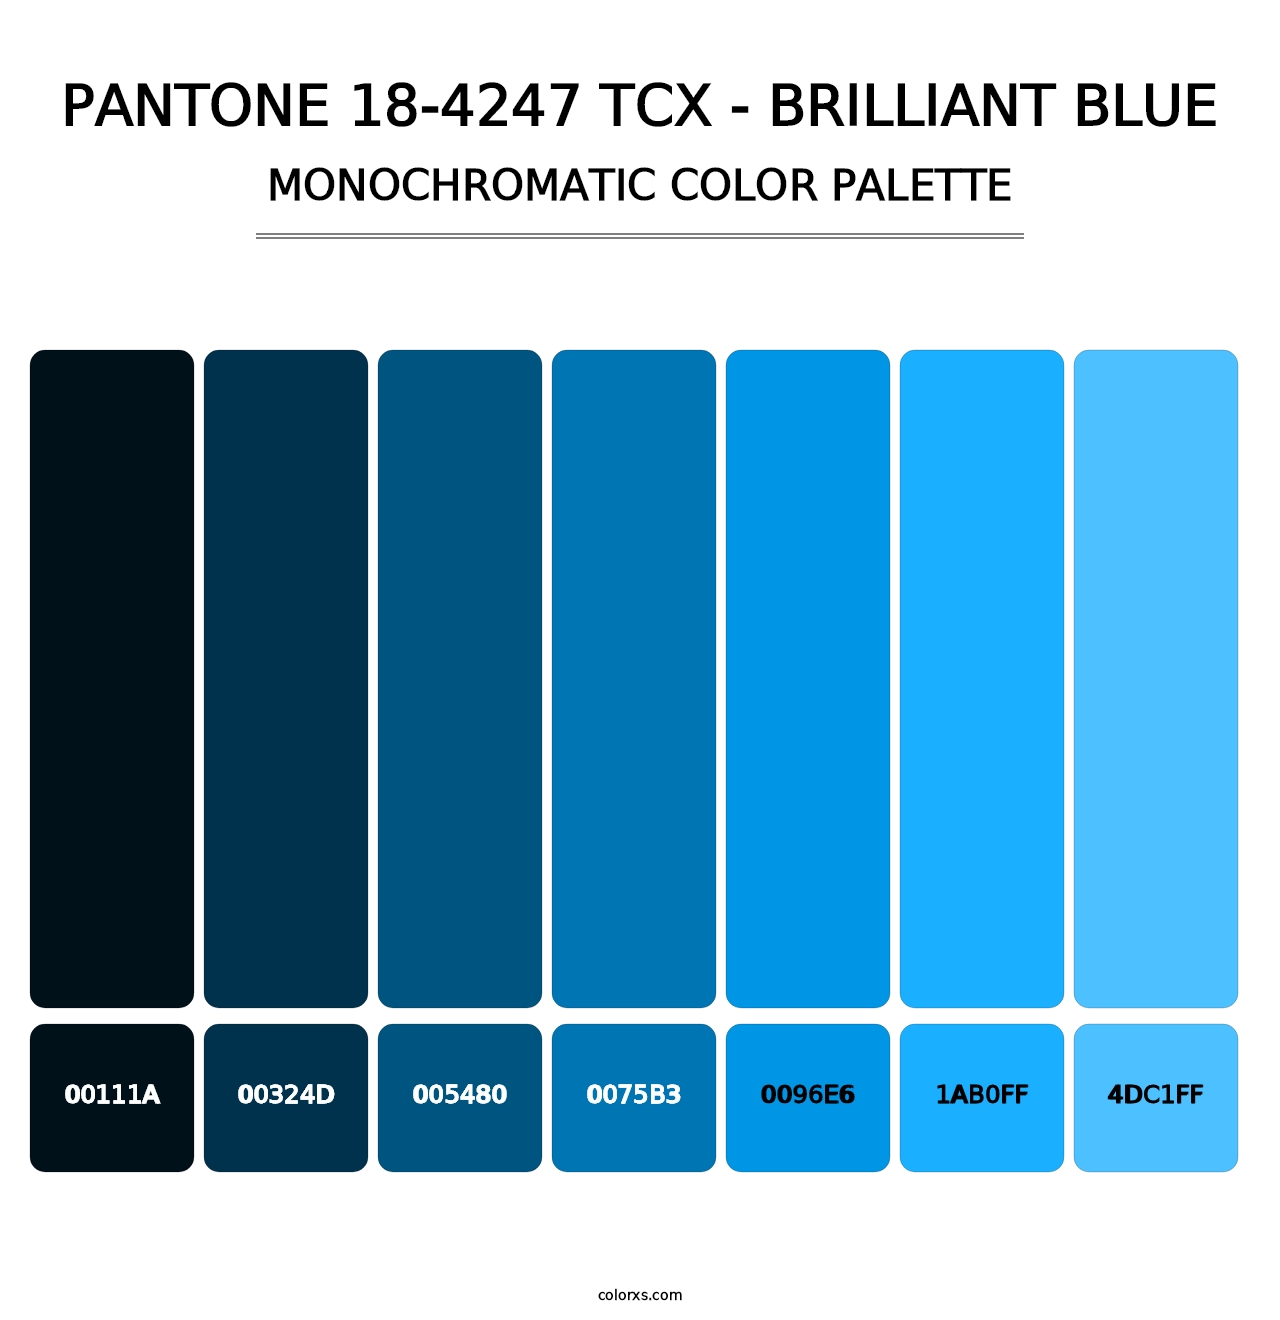 PANTONE 18-4247 TCX - Brilliant Blue - Monochromatic Color Palette